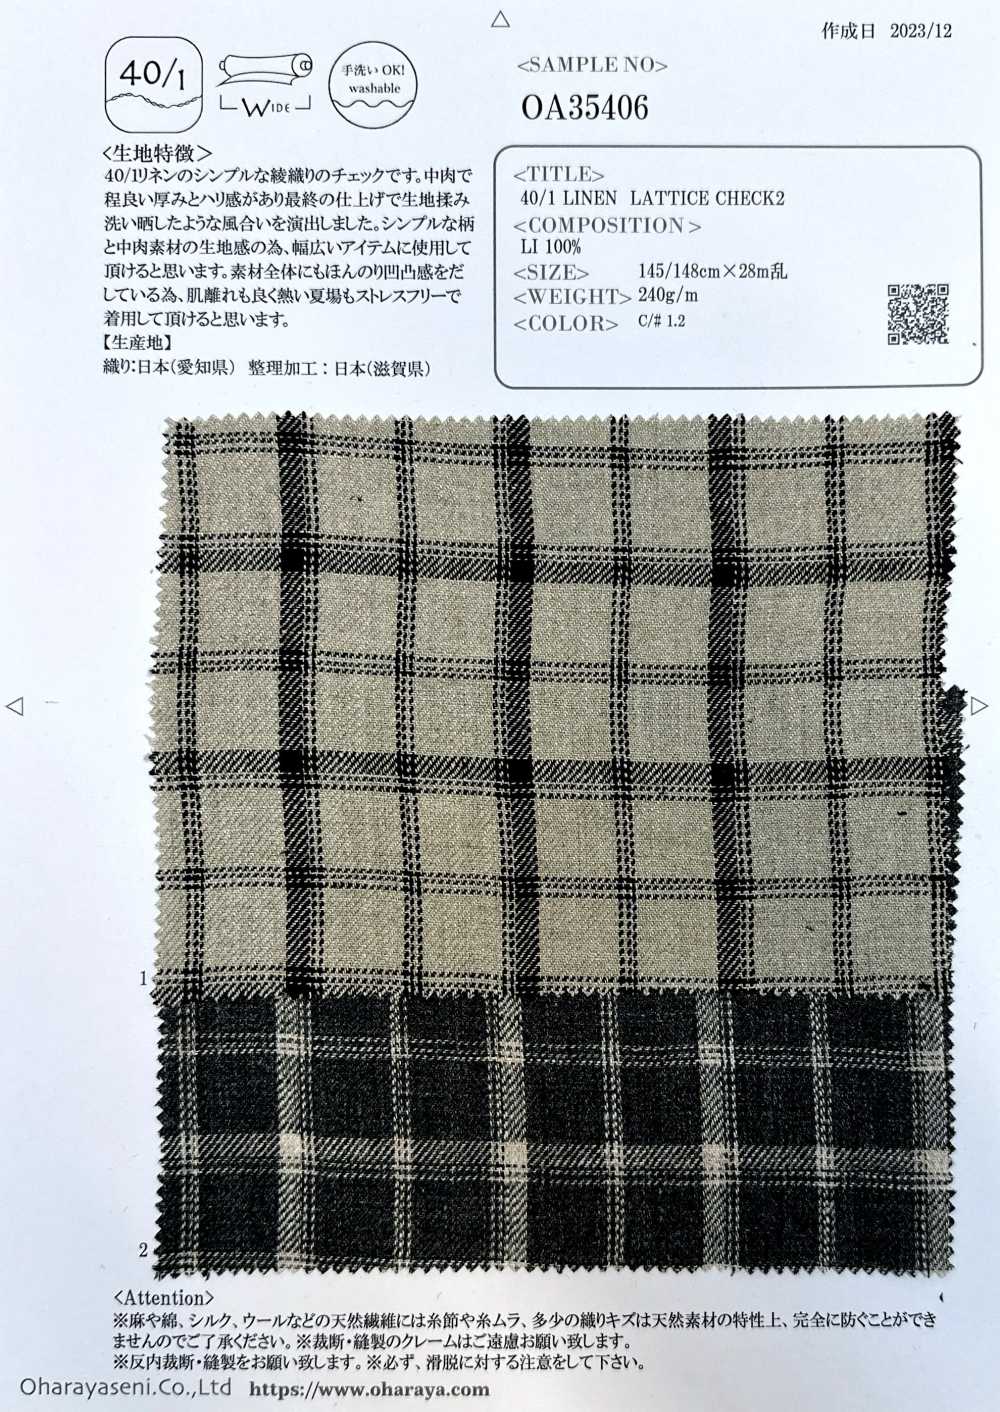 OA35406 VERIFICAÇÃO DE MALHA DE LINHO 40/12[Têxtil / Tecido] Oharayaseni